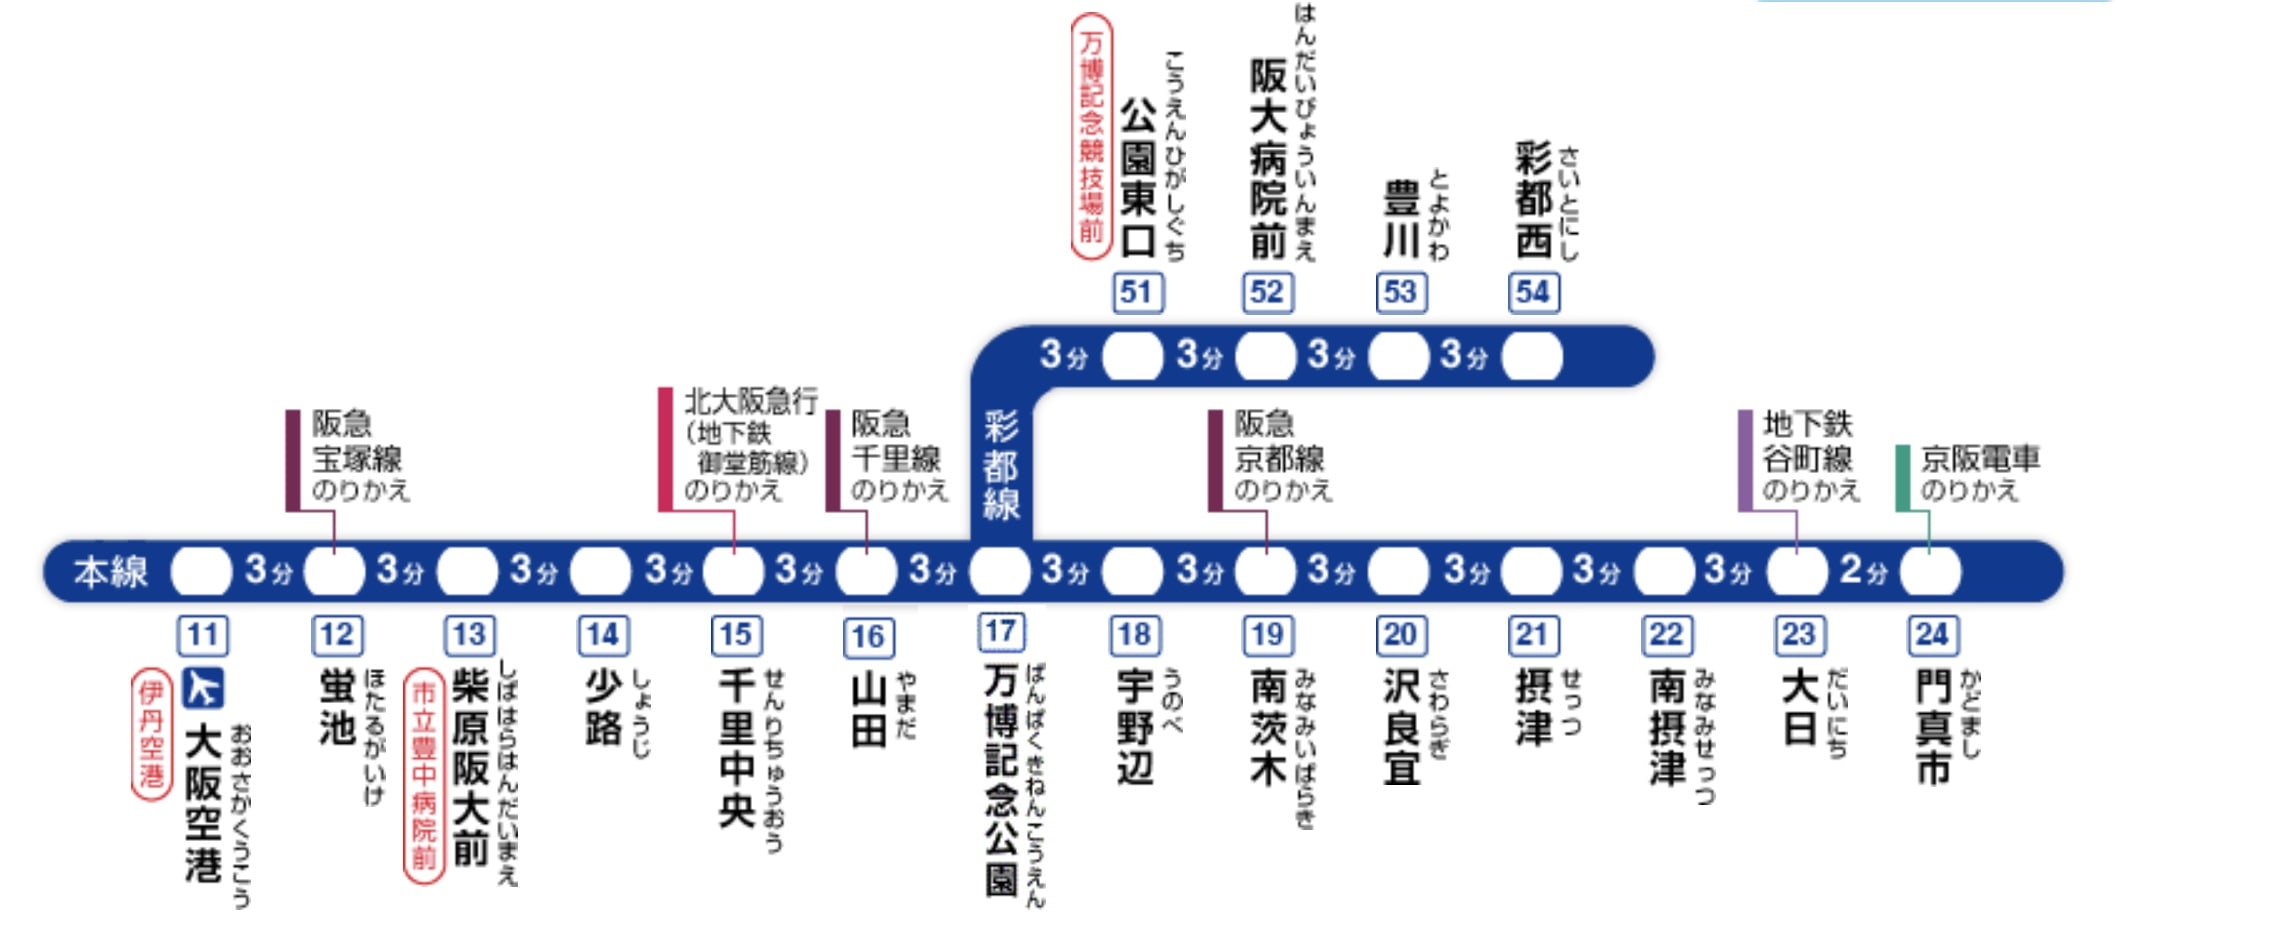 大阪交通-大阪單軌電車(OSAKA Monorail)